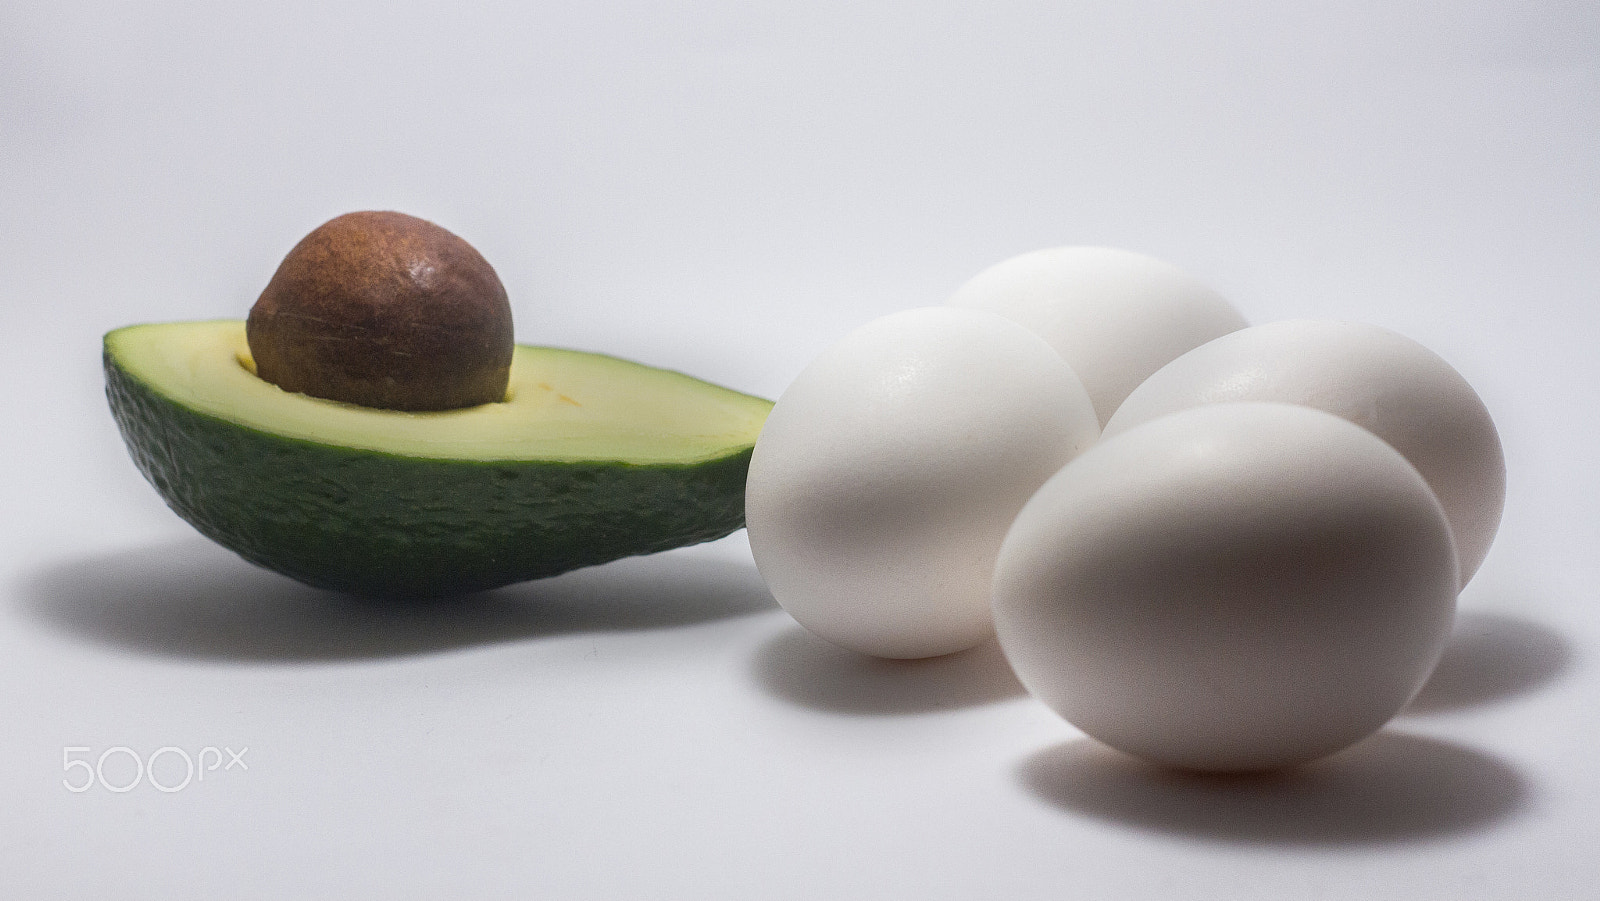 Canon EOS 7D sample photo. Avocado egg white background photography